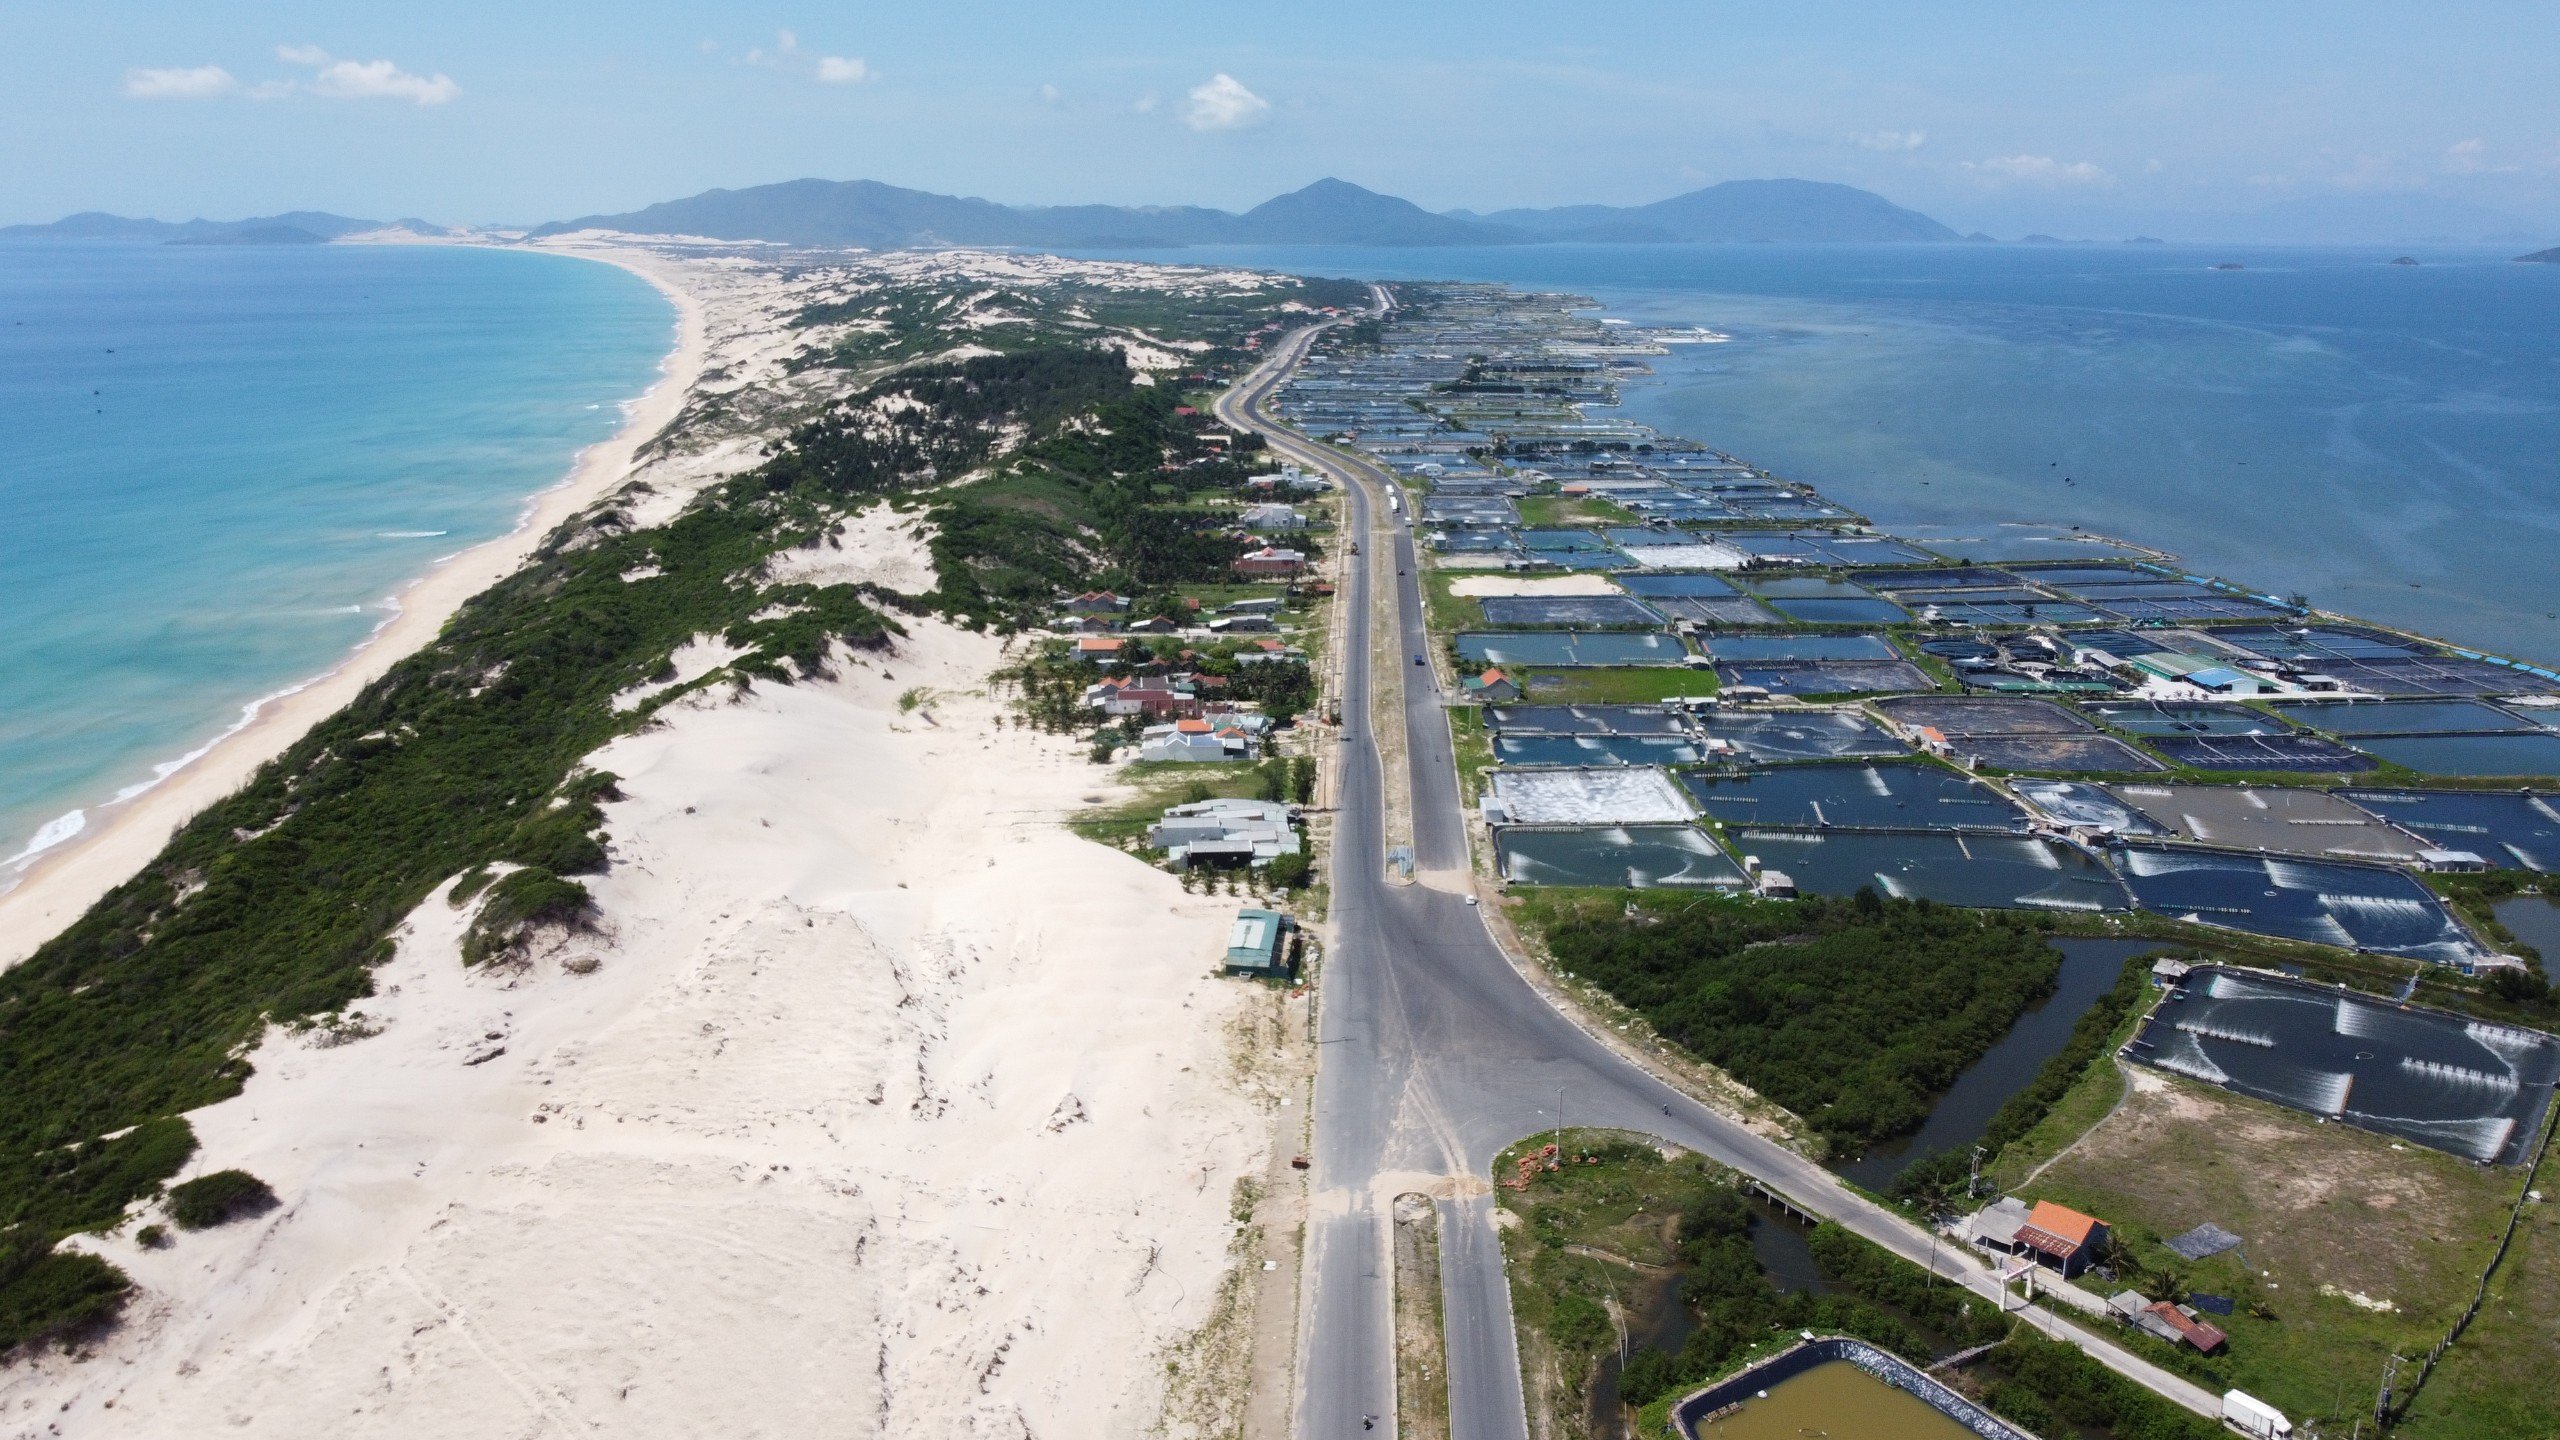 Khu vực biển ở KKT Vân Phong - phía bắc Khánh Hòa có nhiều tiềm năng phát triển kinh tế biển